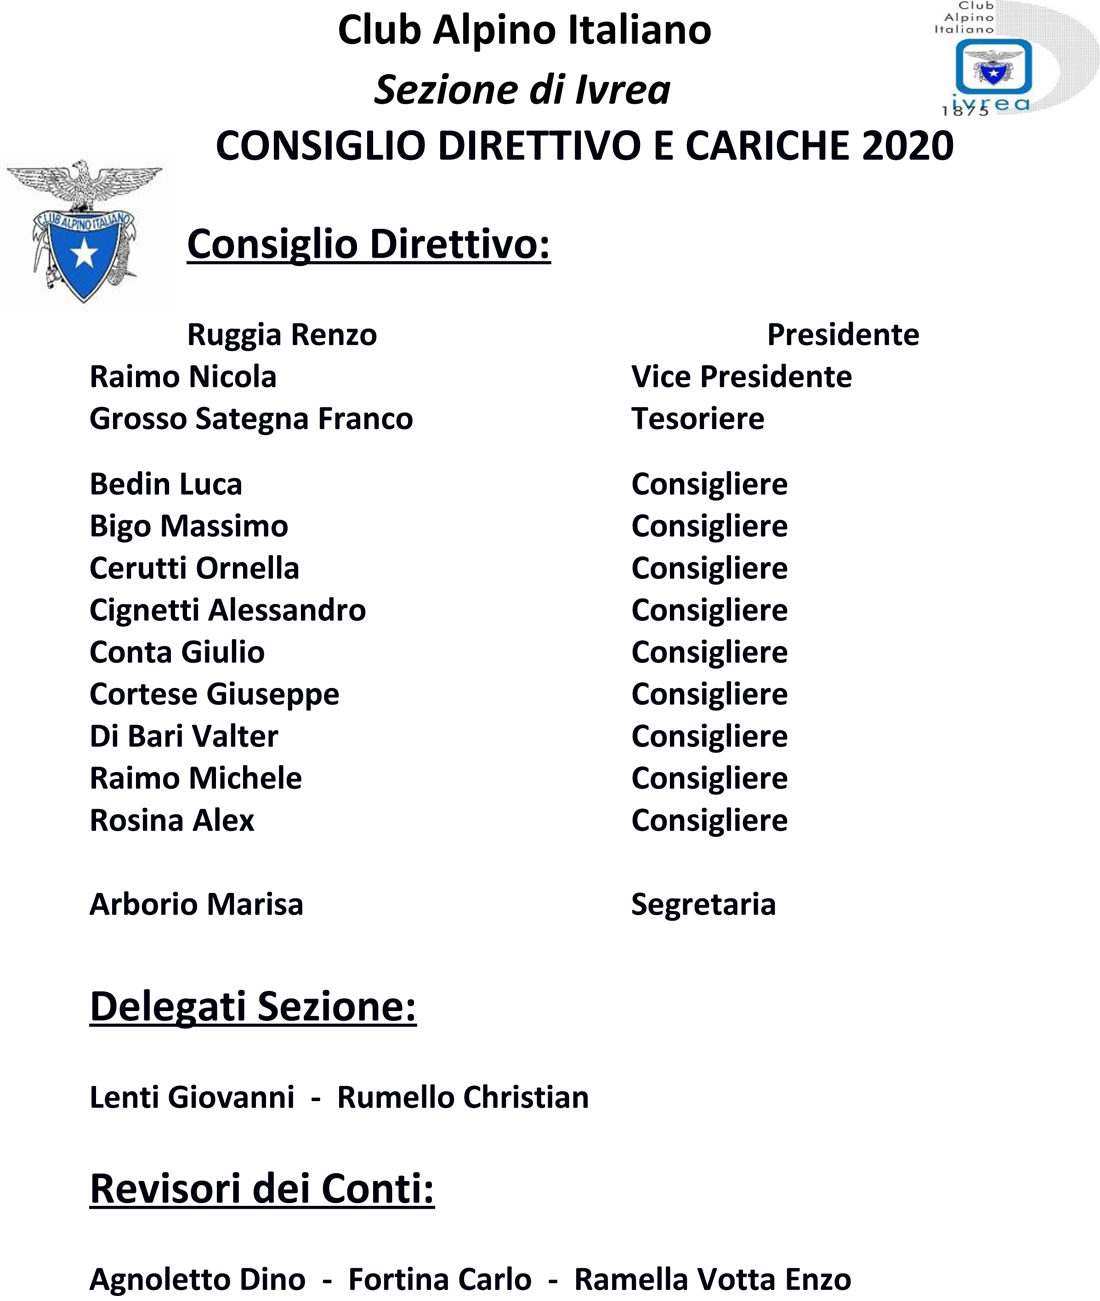 Consiglio_Direttivo_e_cariche_2020.jpg